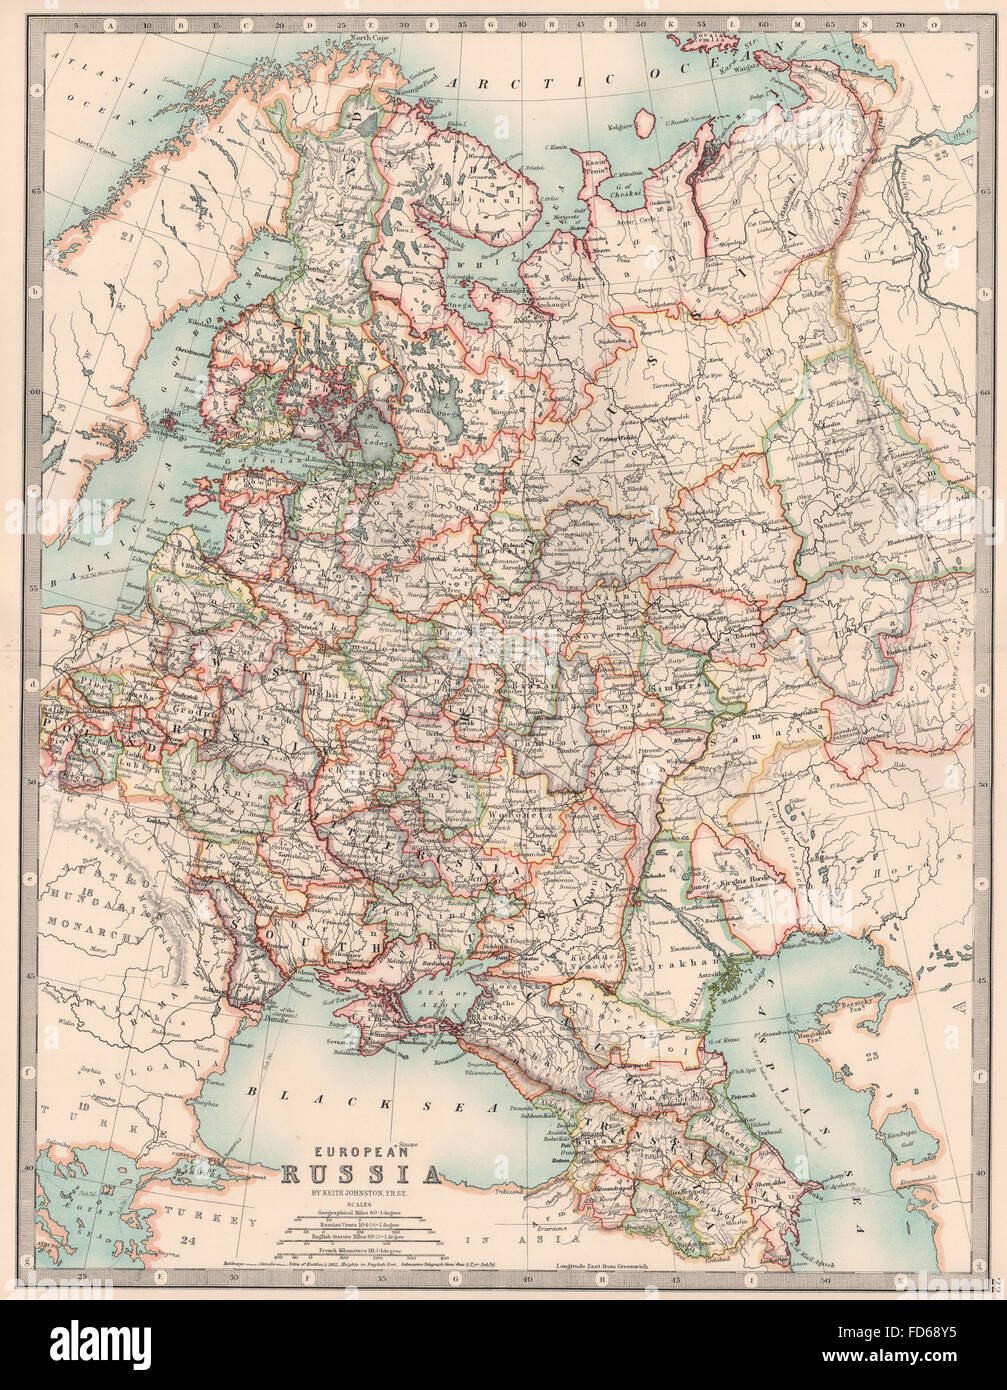 EUROPEAN RUSSIA: Including Finland Caucasus Poland Ukraine. JOHNSTON, 1906 map Stock Photo